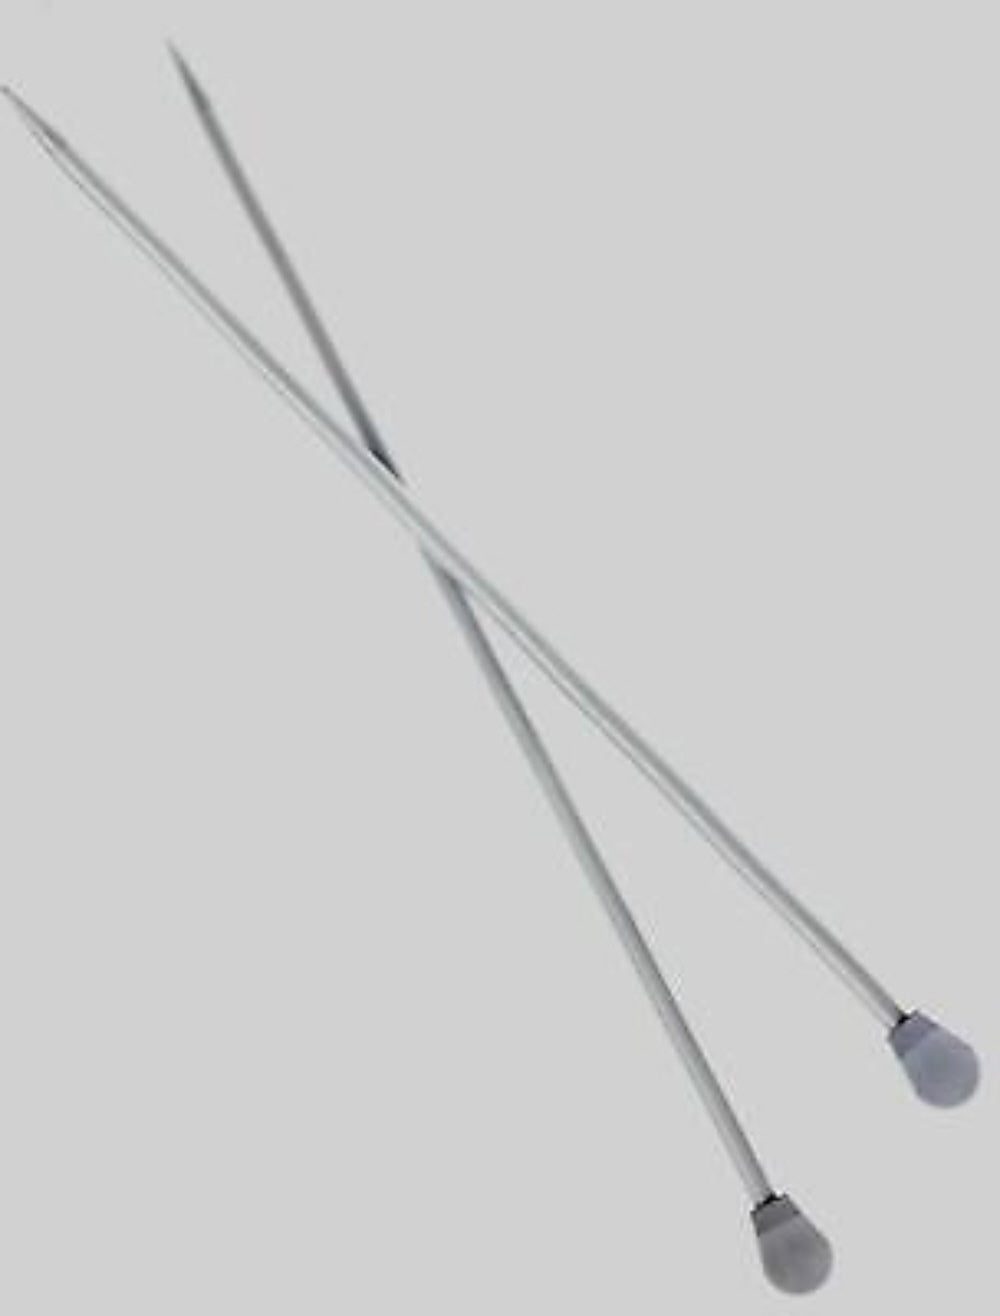 Lesur Aluminium Knitting Needles